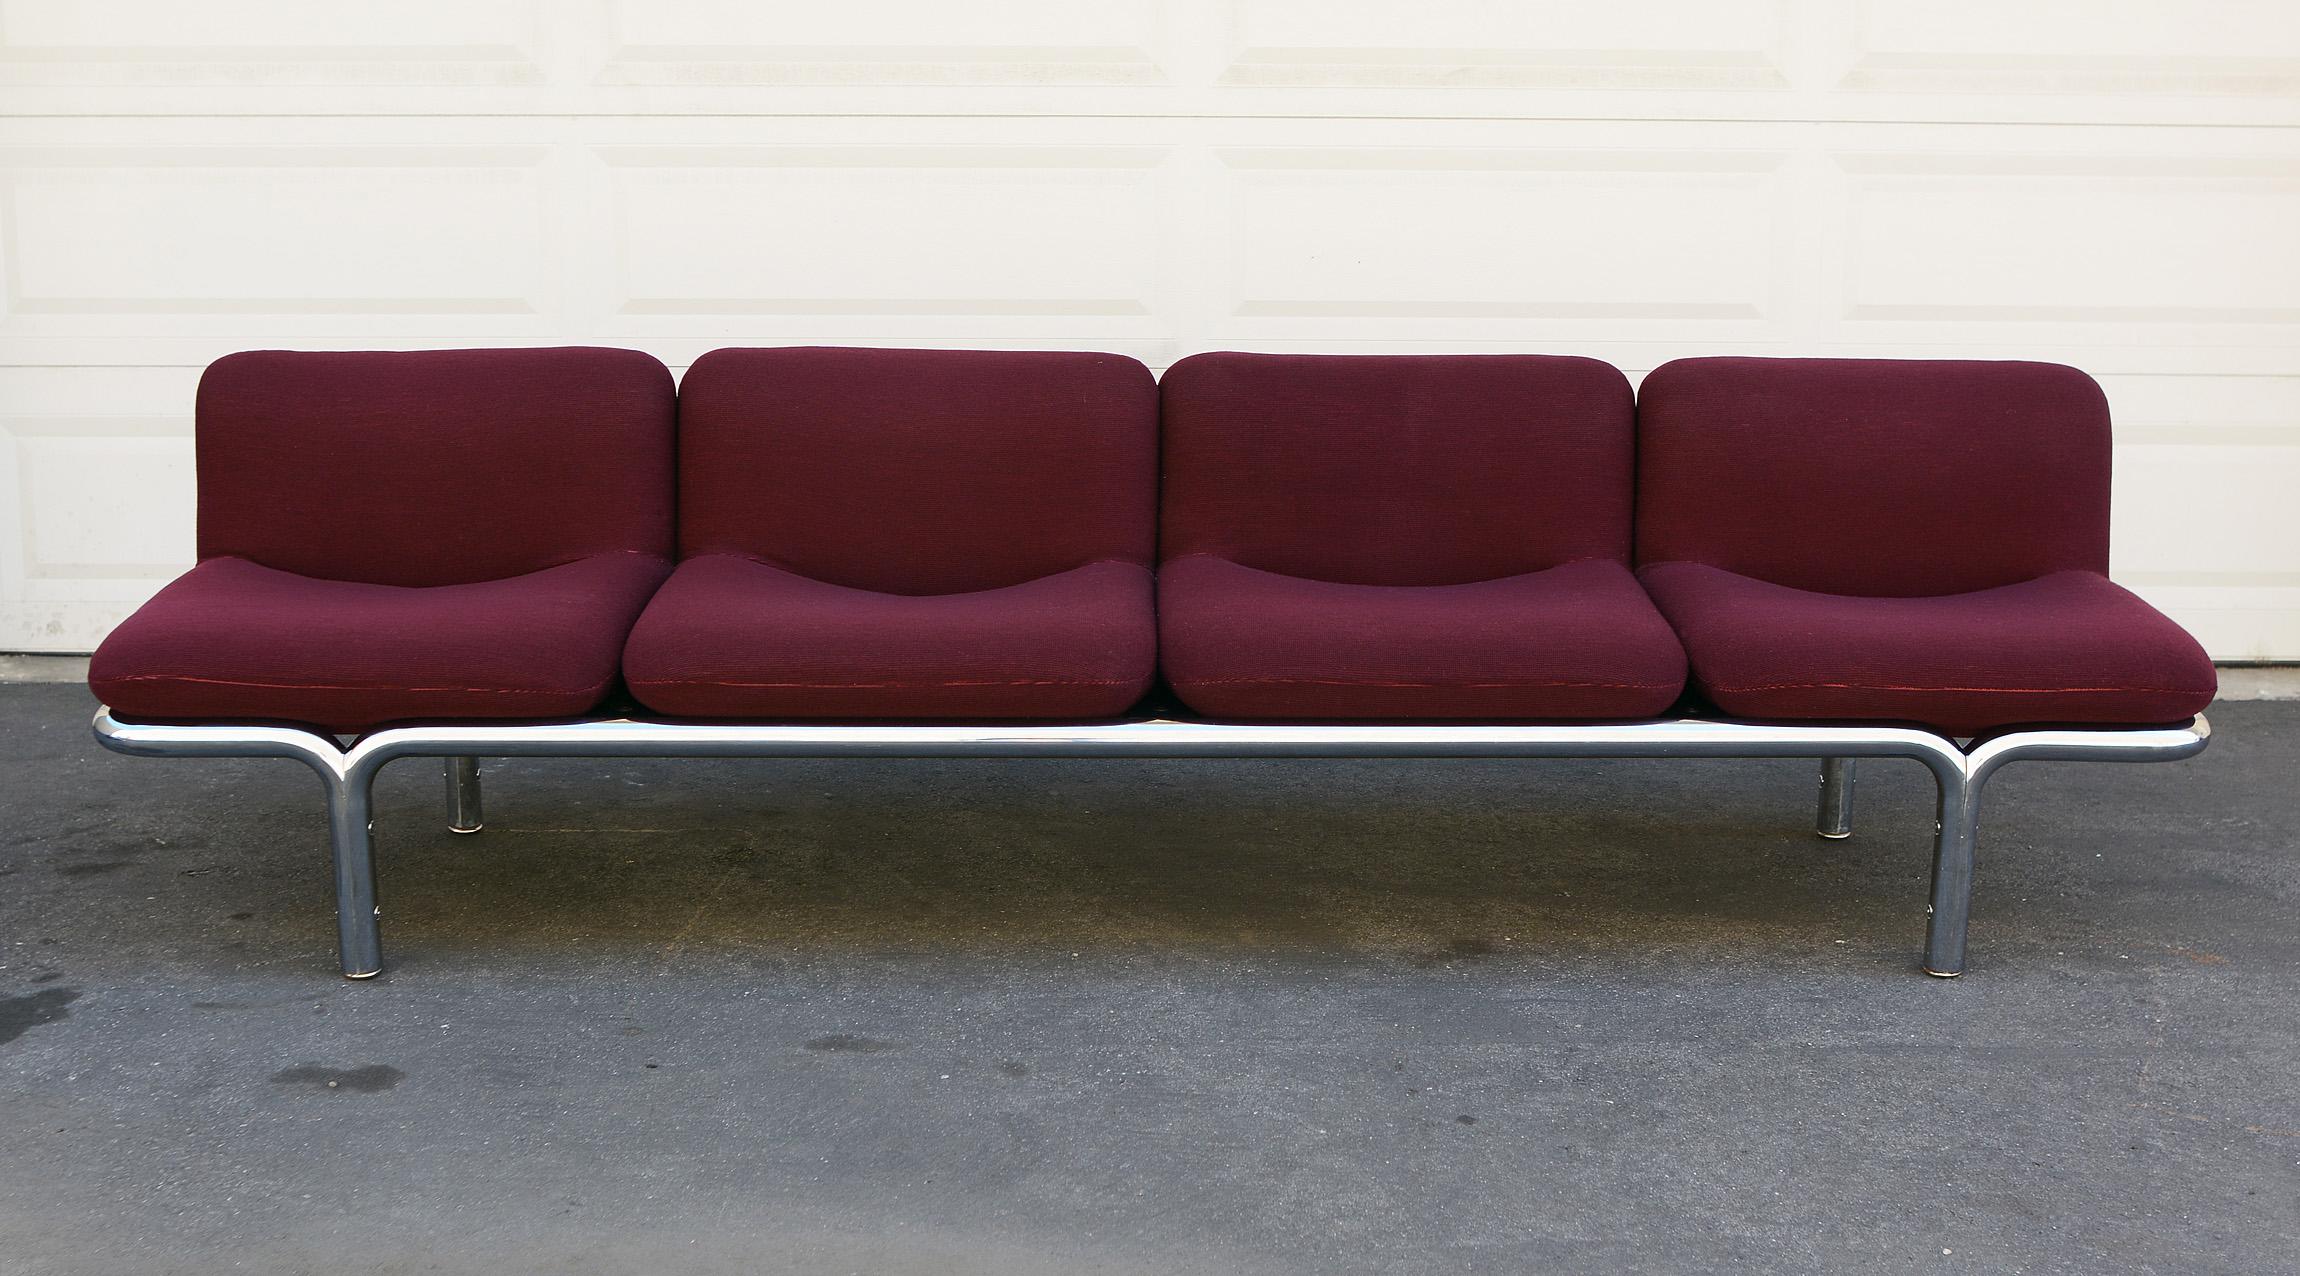 American Four-Seat Chrome Tubular Sofa by Brian Kane for Metropolitan